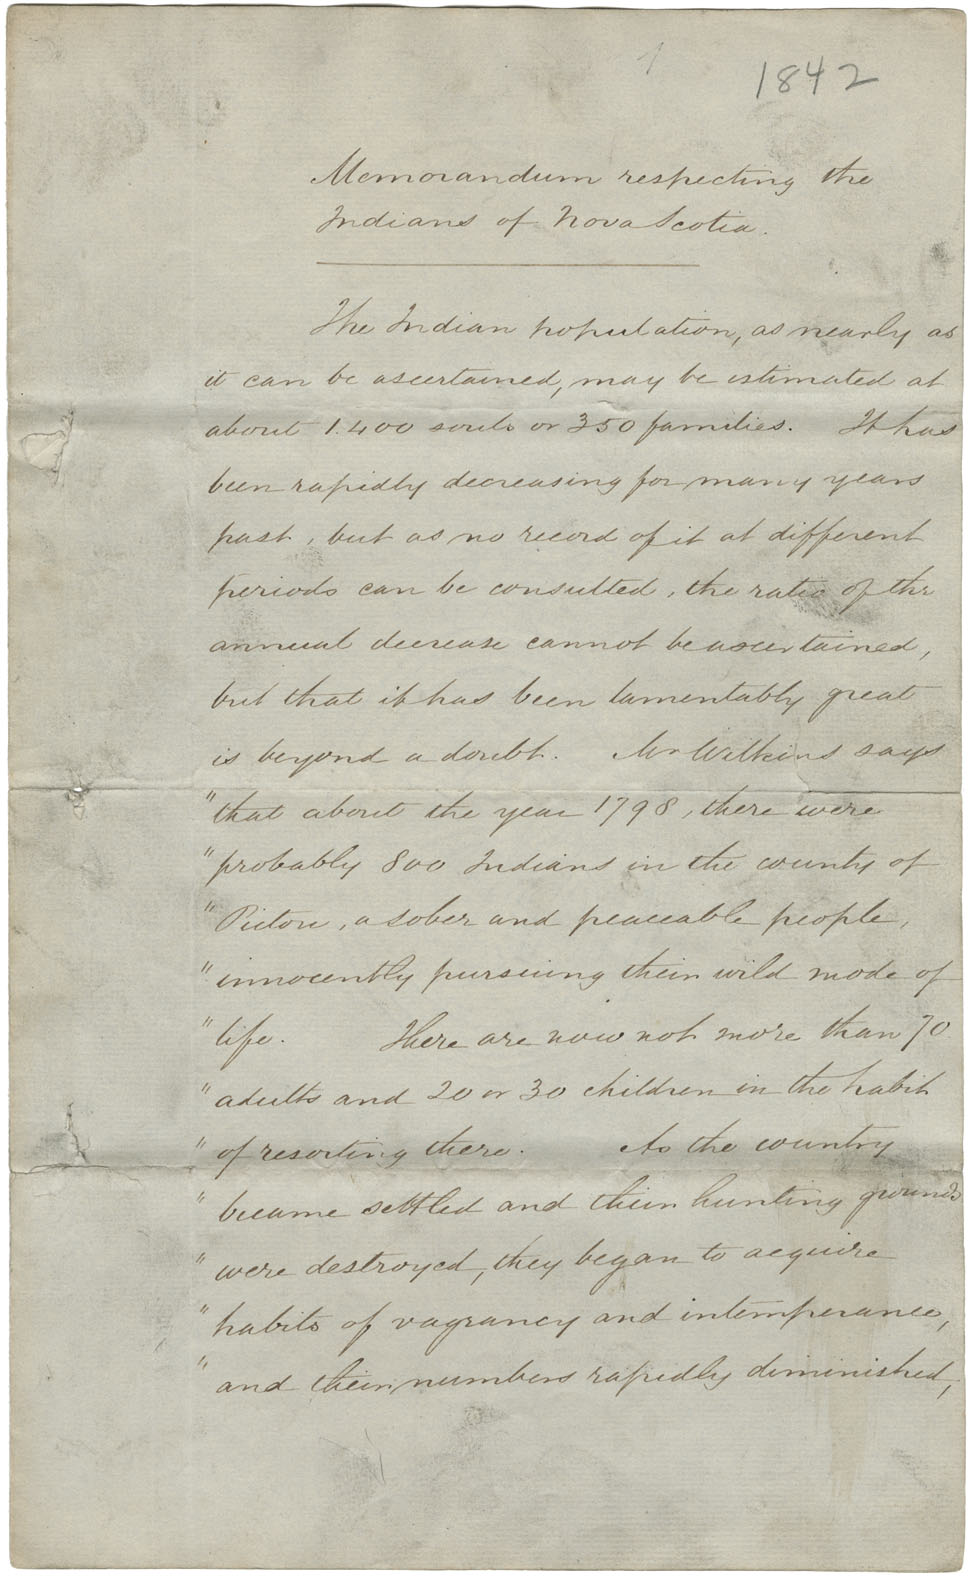 Appendix 6, Legislative Council Journal for 1842. Memorandum respecting the Mi'kmaq of Nova Scotia read 14 July 1842.